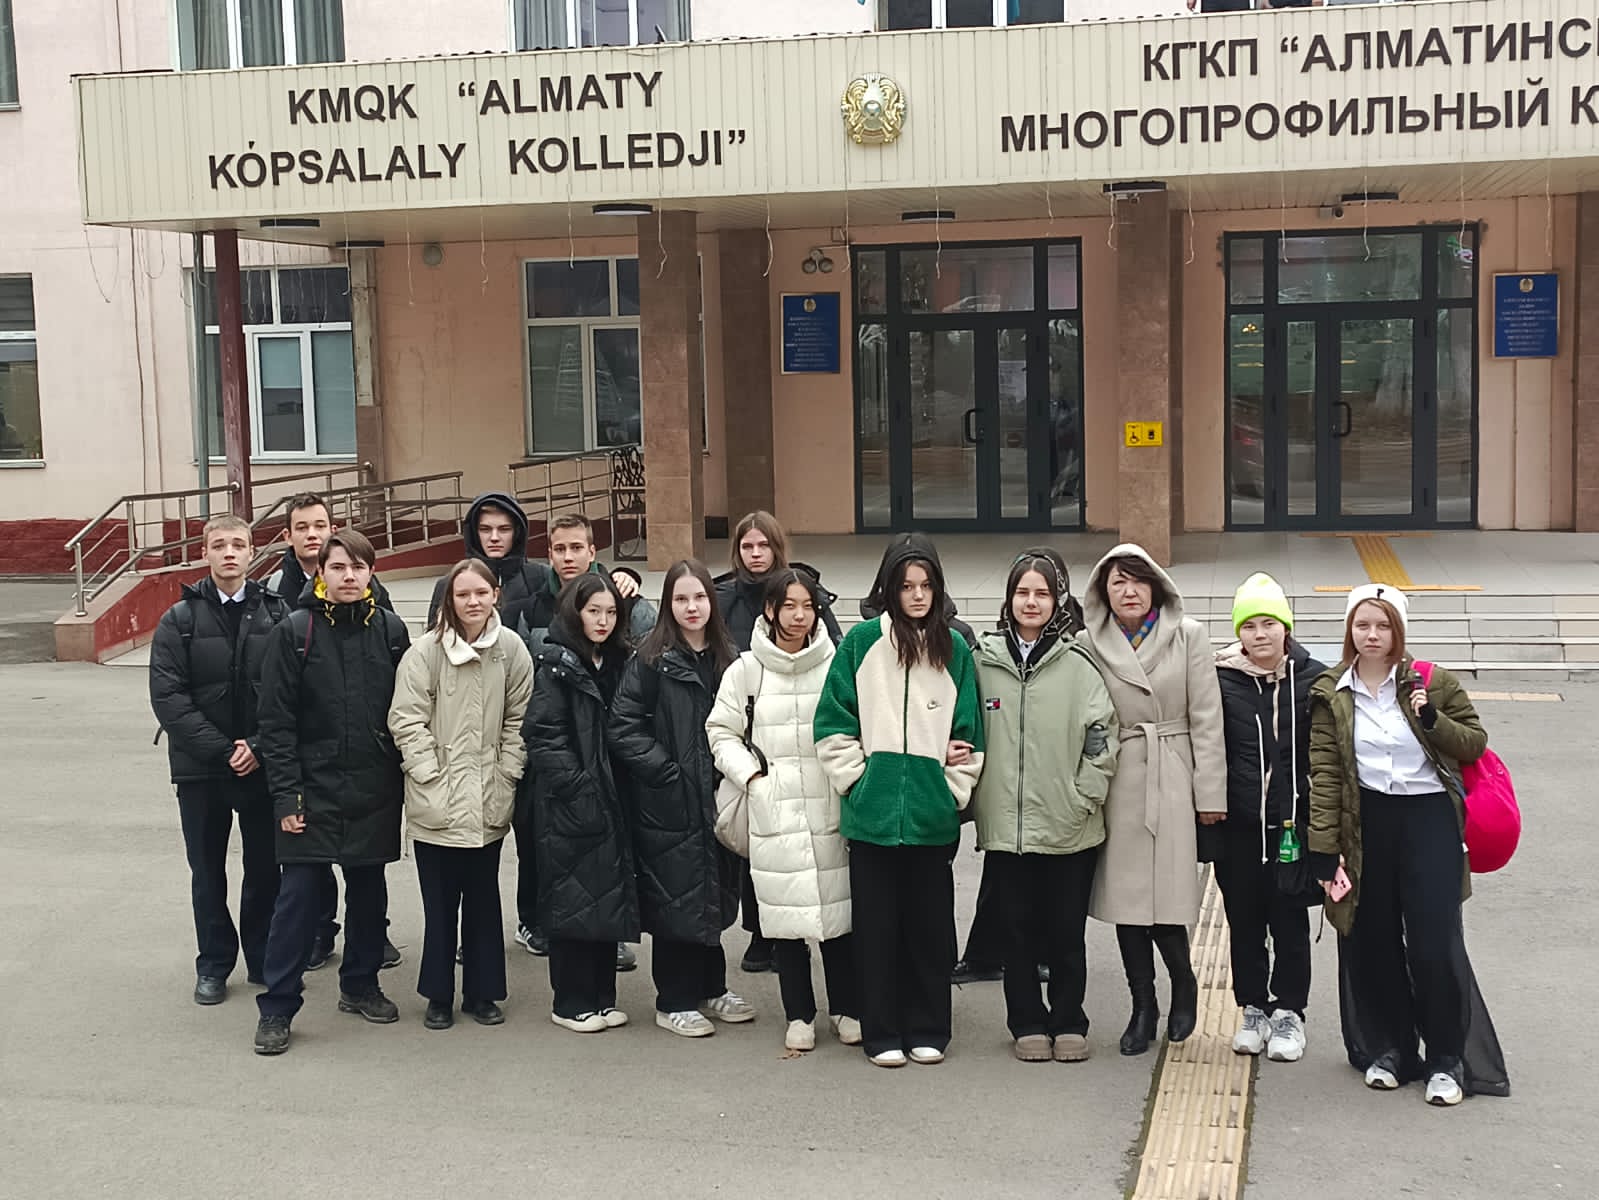 9 "В", 9 "Д" сынып оқушылары "Алматы көпсалалы колледжіне" барып қайтты.